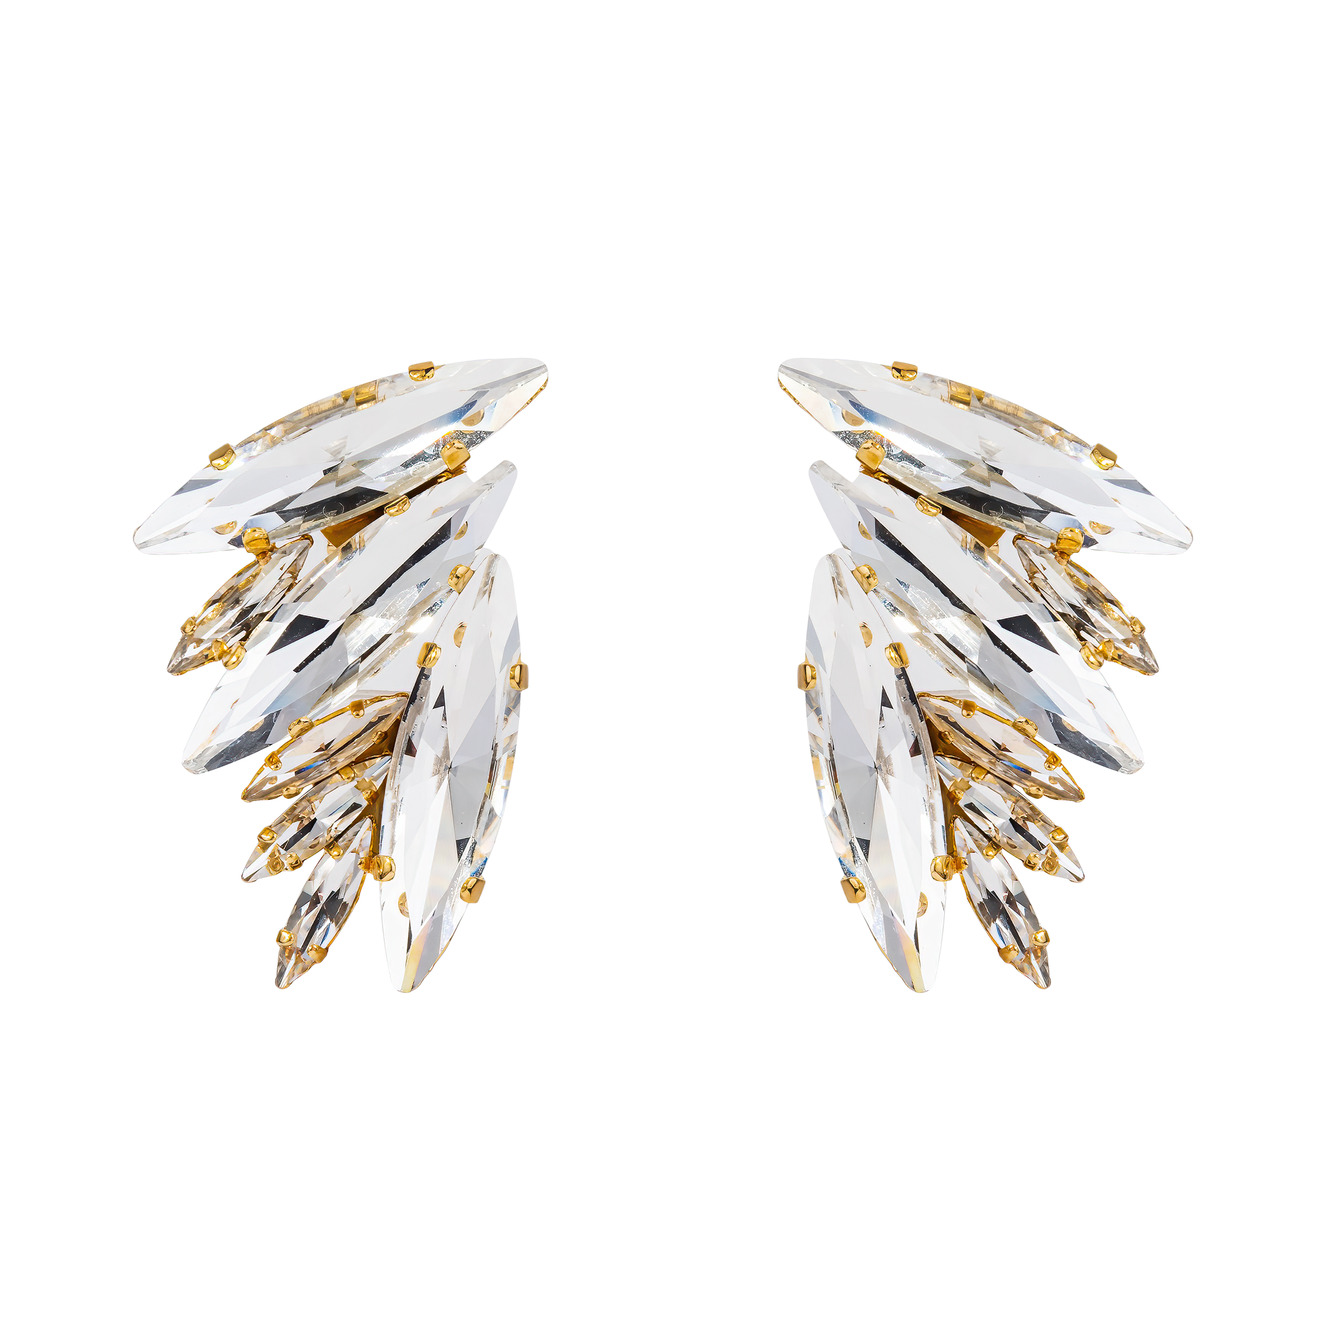 Ellen Conde Позолоченные массивные серьги в форме крыльев с крупными удлигненными кристалами 40240